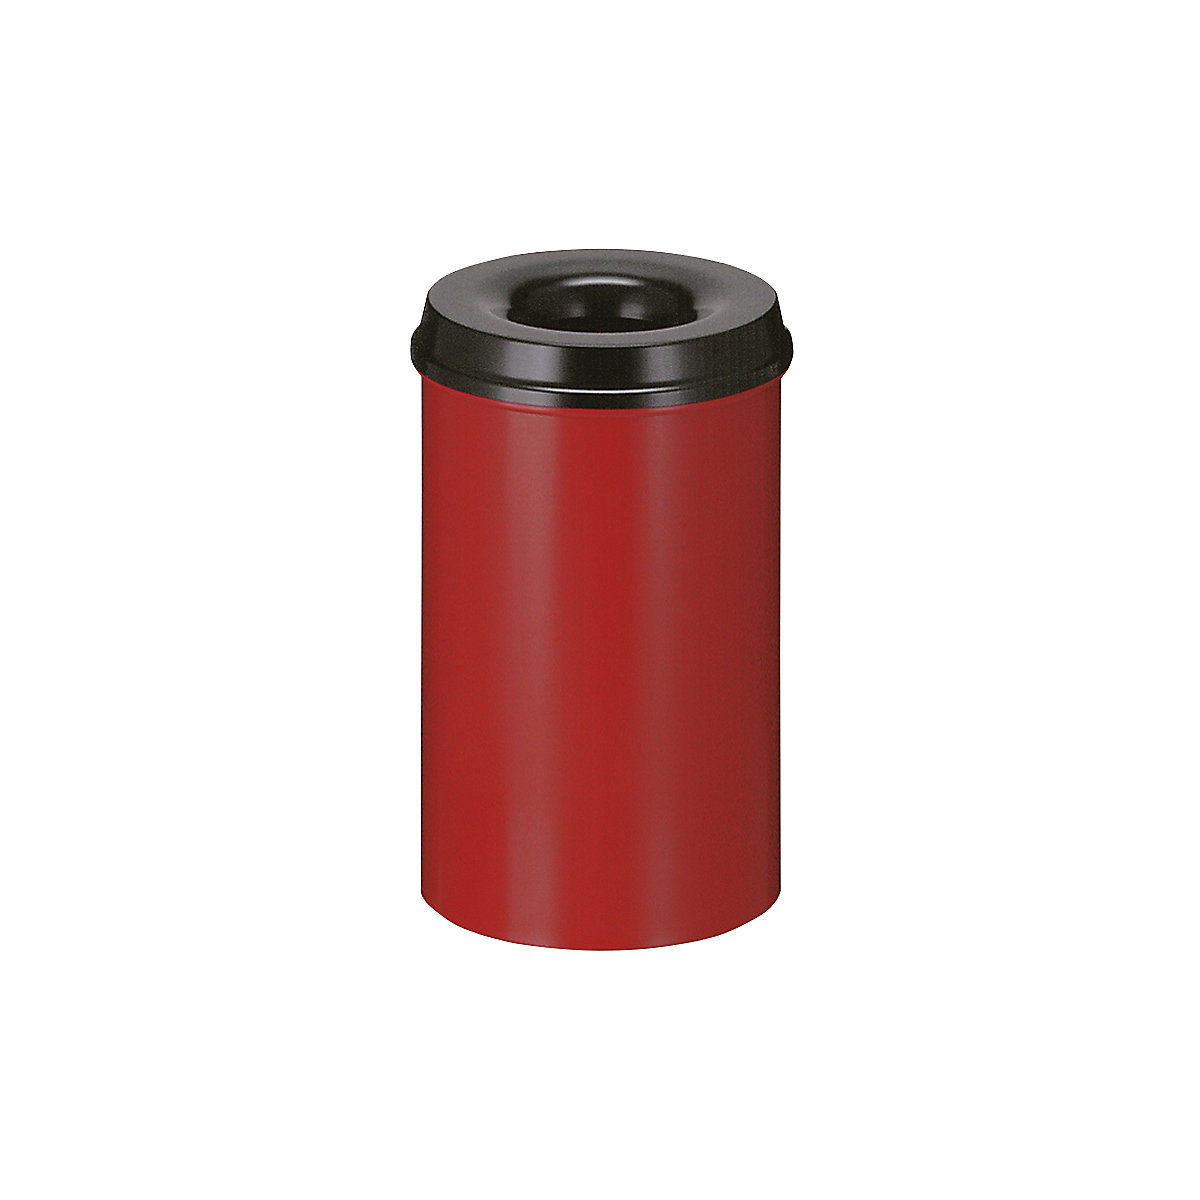 Sicherheits-Papierkorb, Stahl, selbstlöschend, Volumen 20 l, HxØ 426 x 260 mm, Korpus rot / Löschkopf schwarz-8